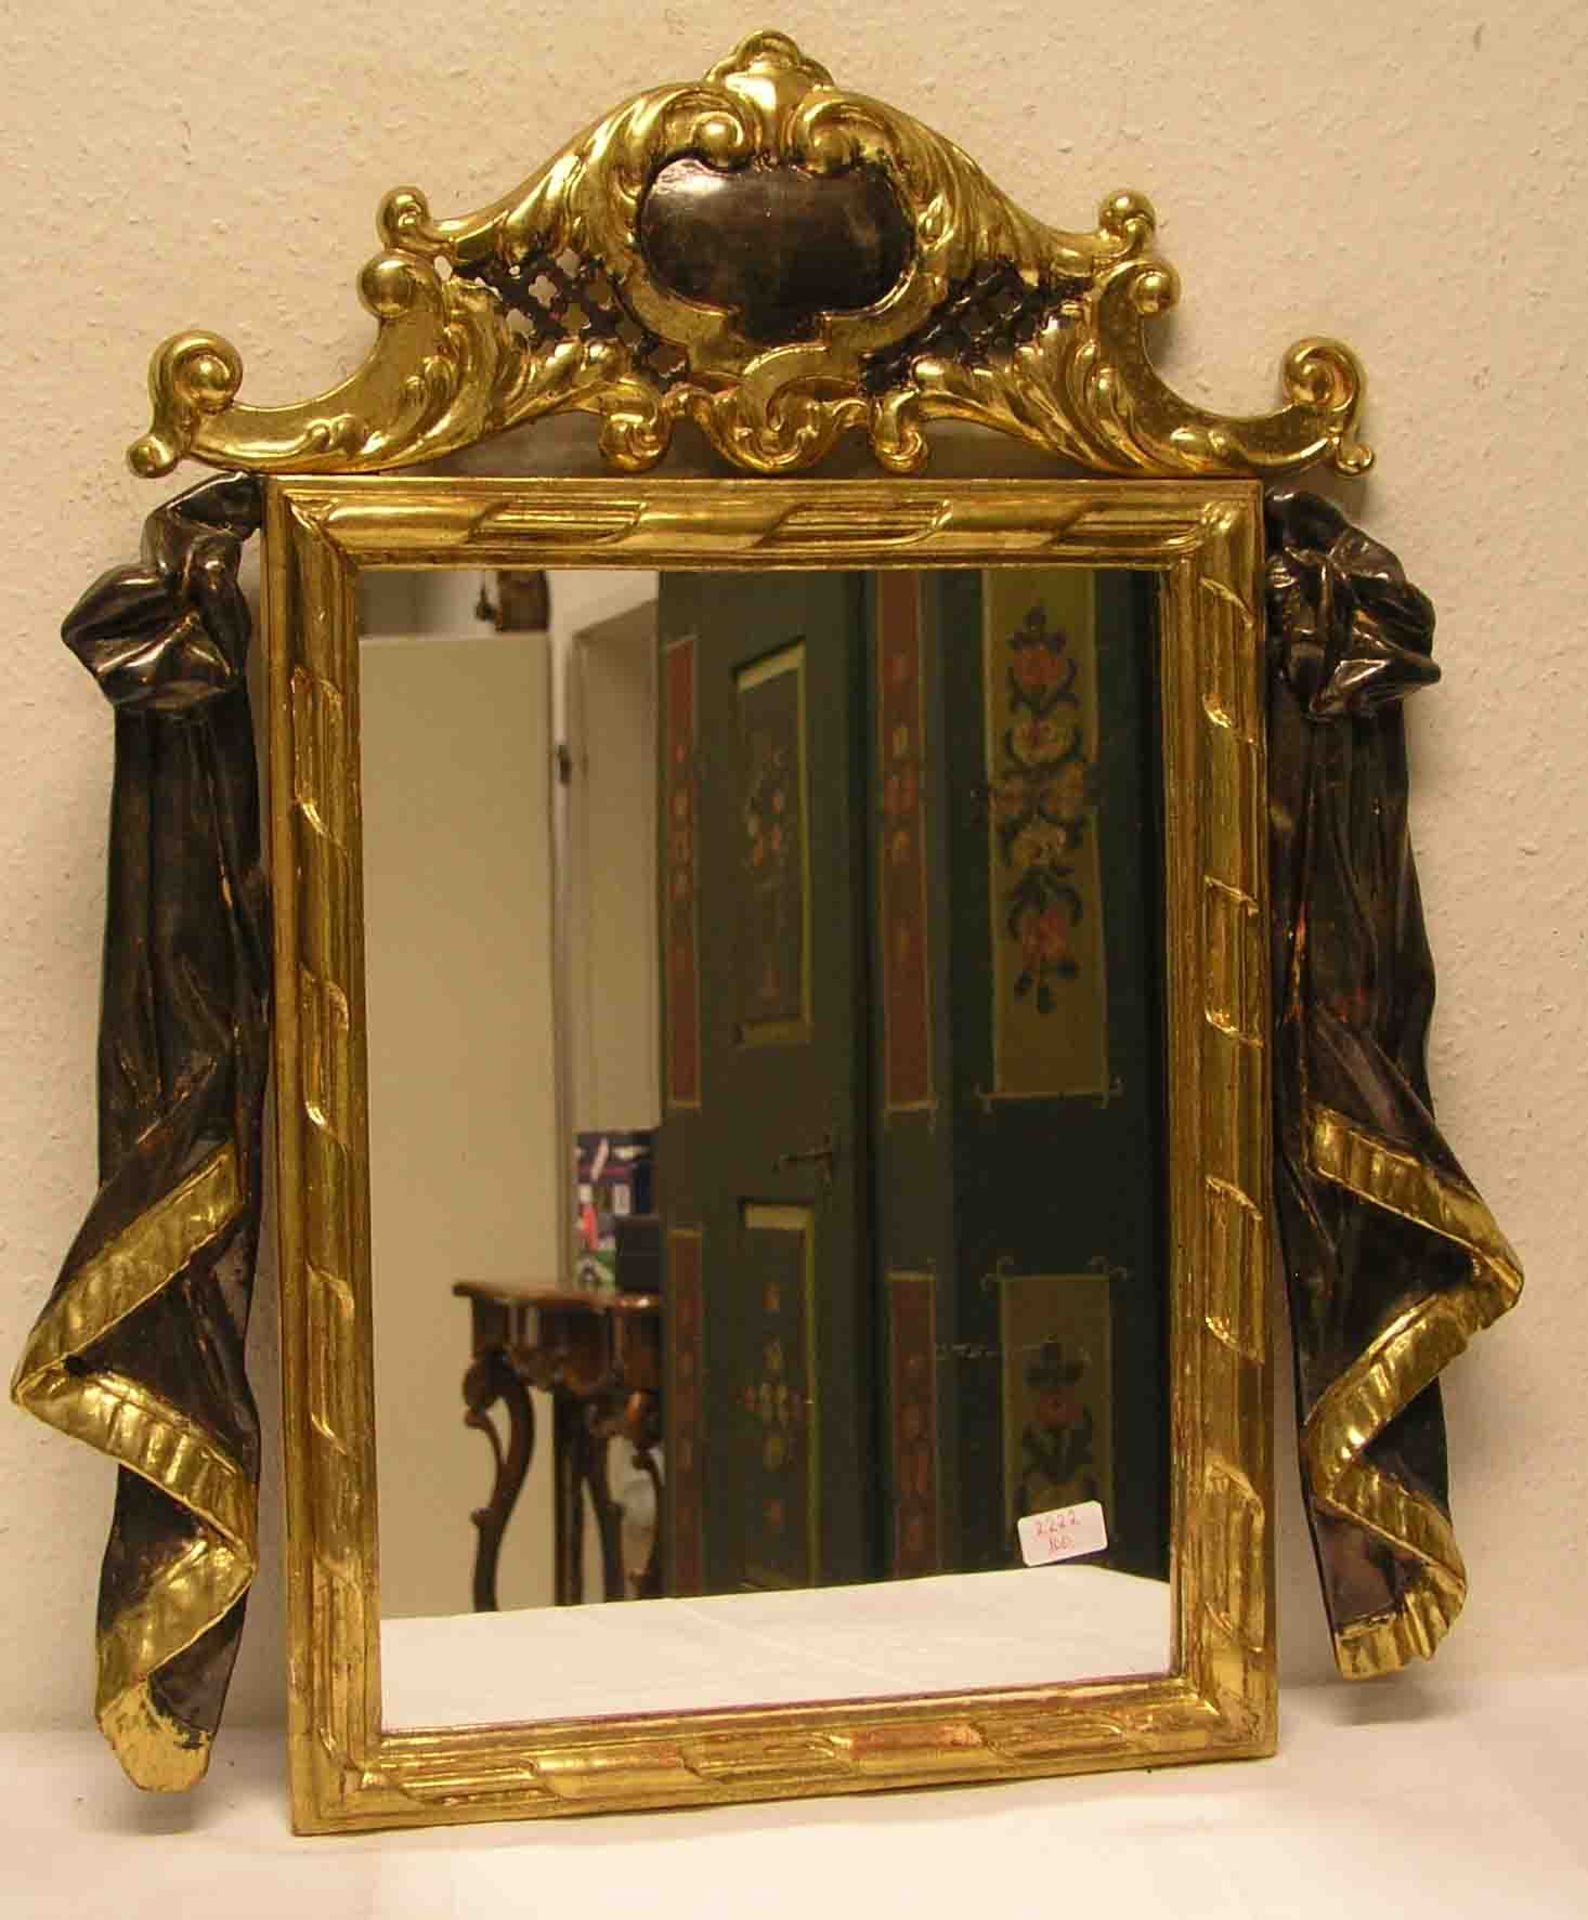 Spiegel im Barockstil. Holz geschnitzt, farbig gefasst. Gesamtgröße: 77 x 69cm.